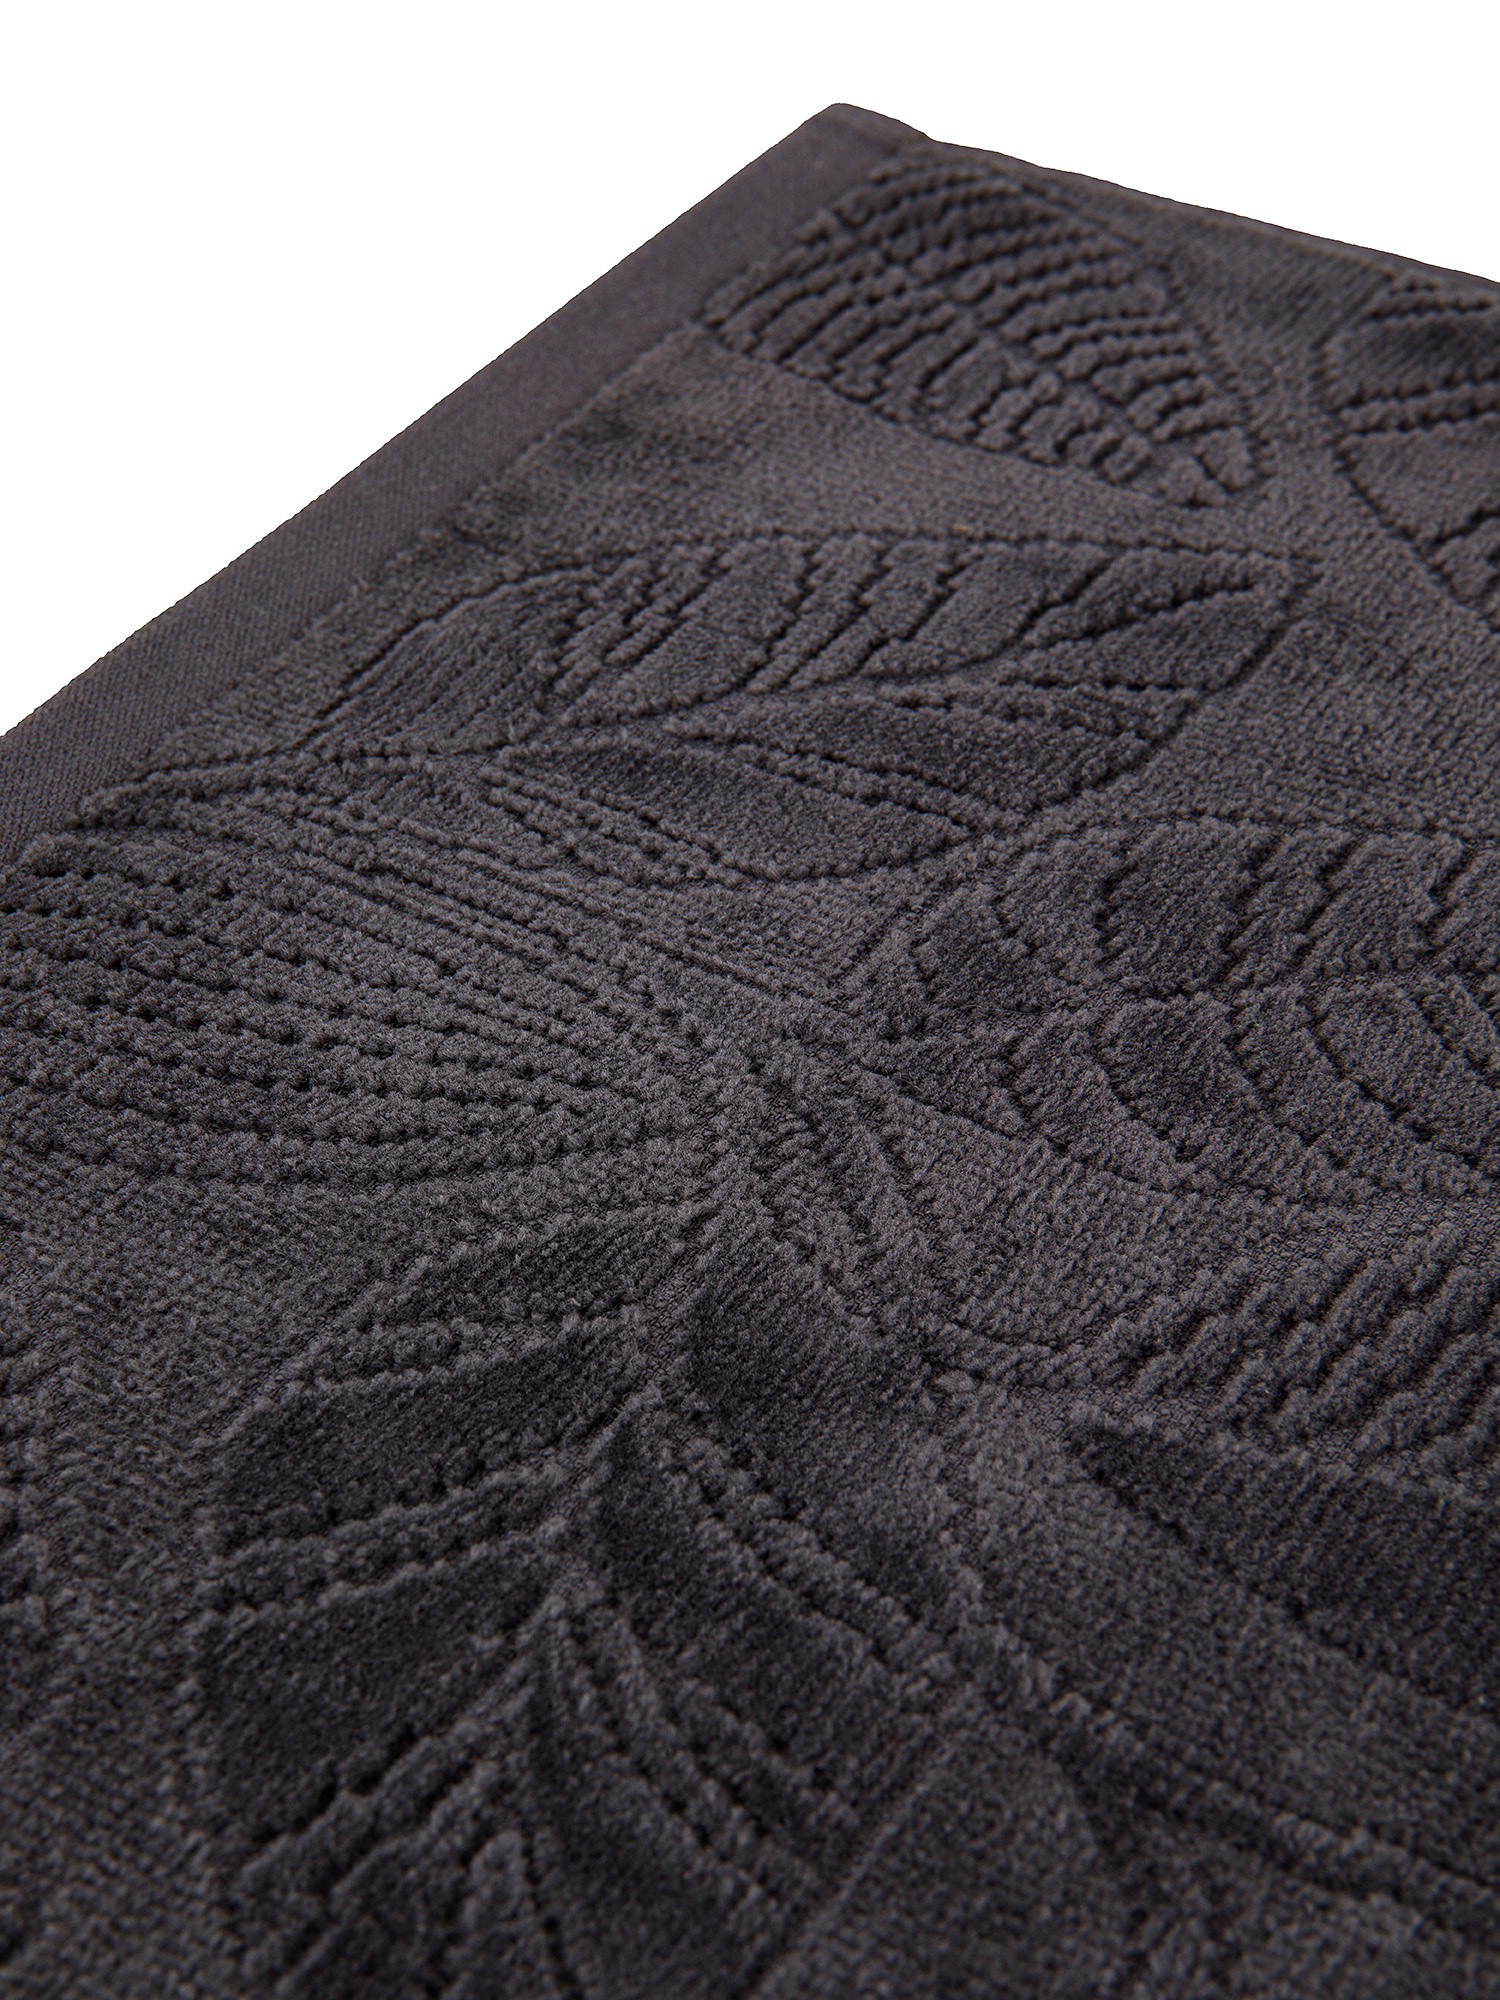 Asciugamano cotone velour motivo a fiori, Grigio, large image number 2